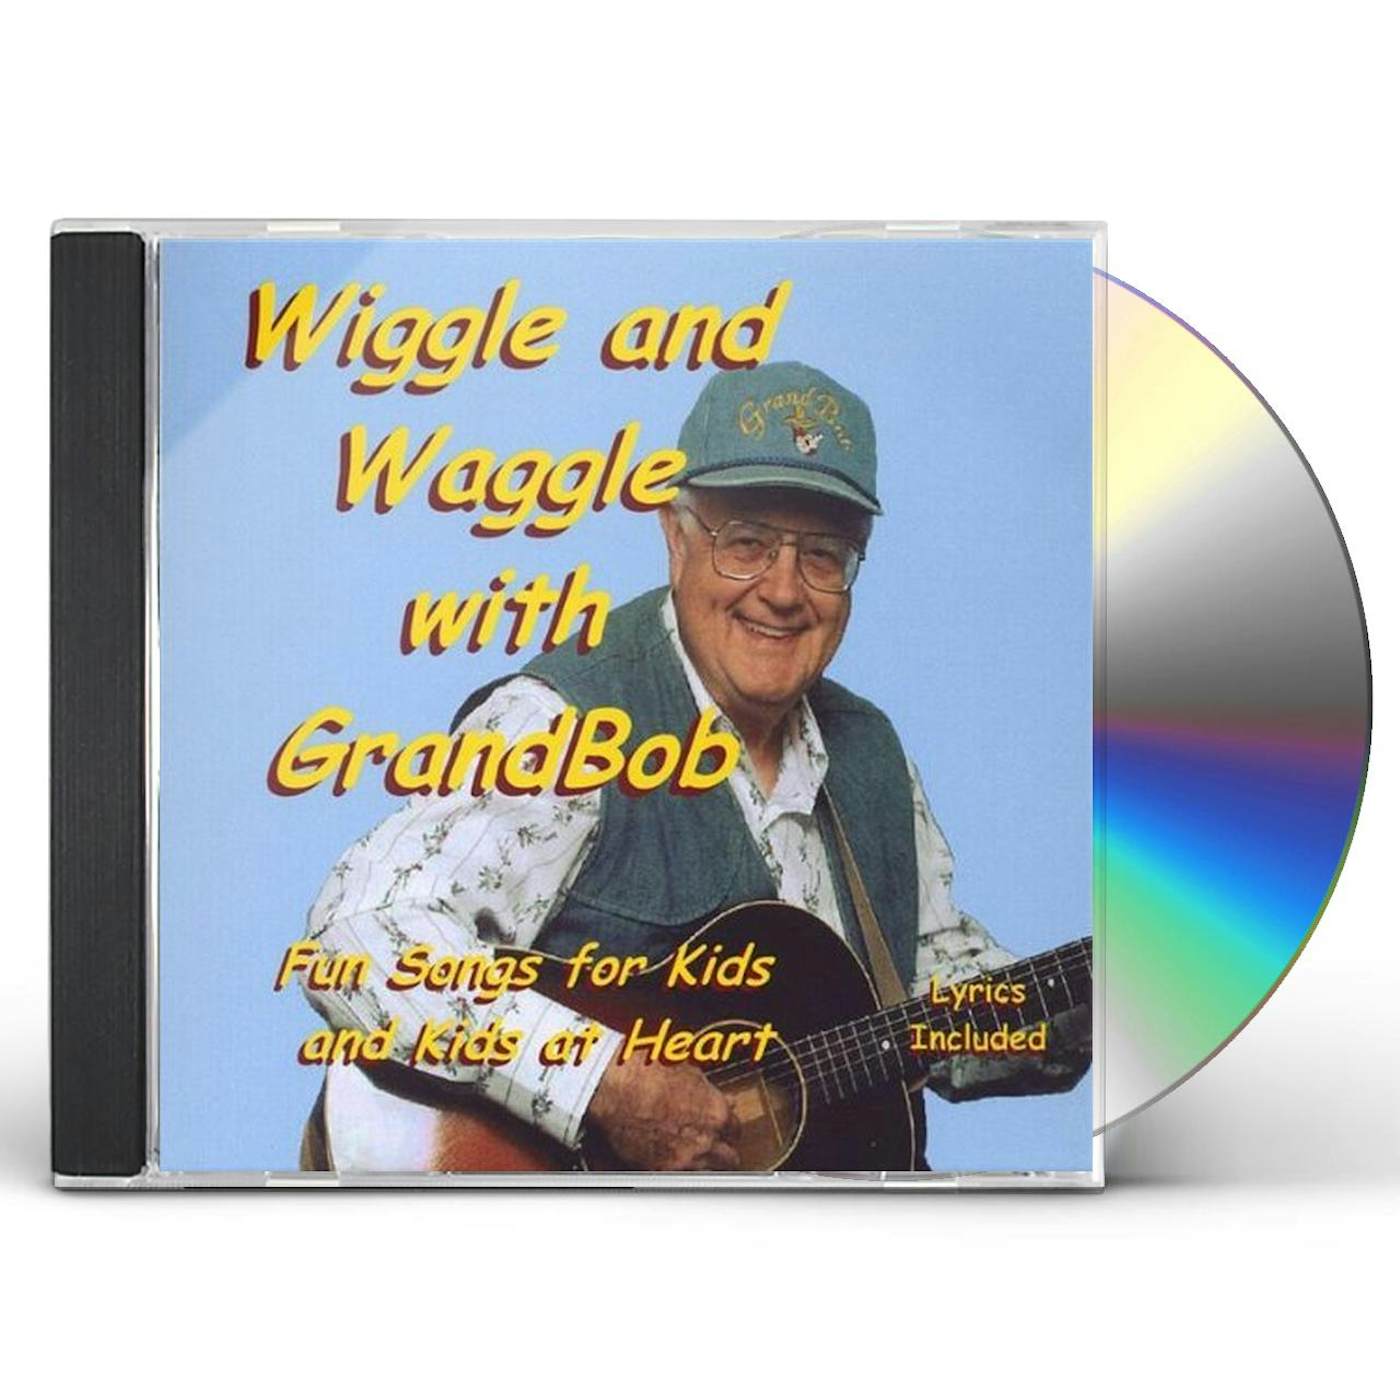 WIGGLE & WAGGLE WITH GRANDBOB CD